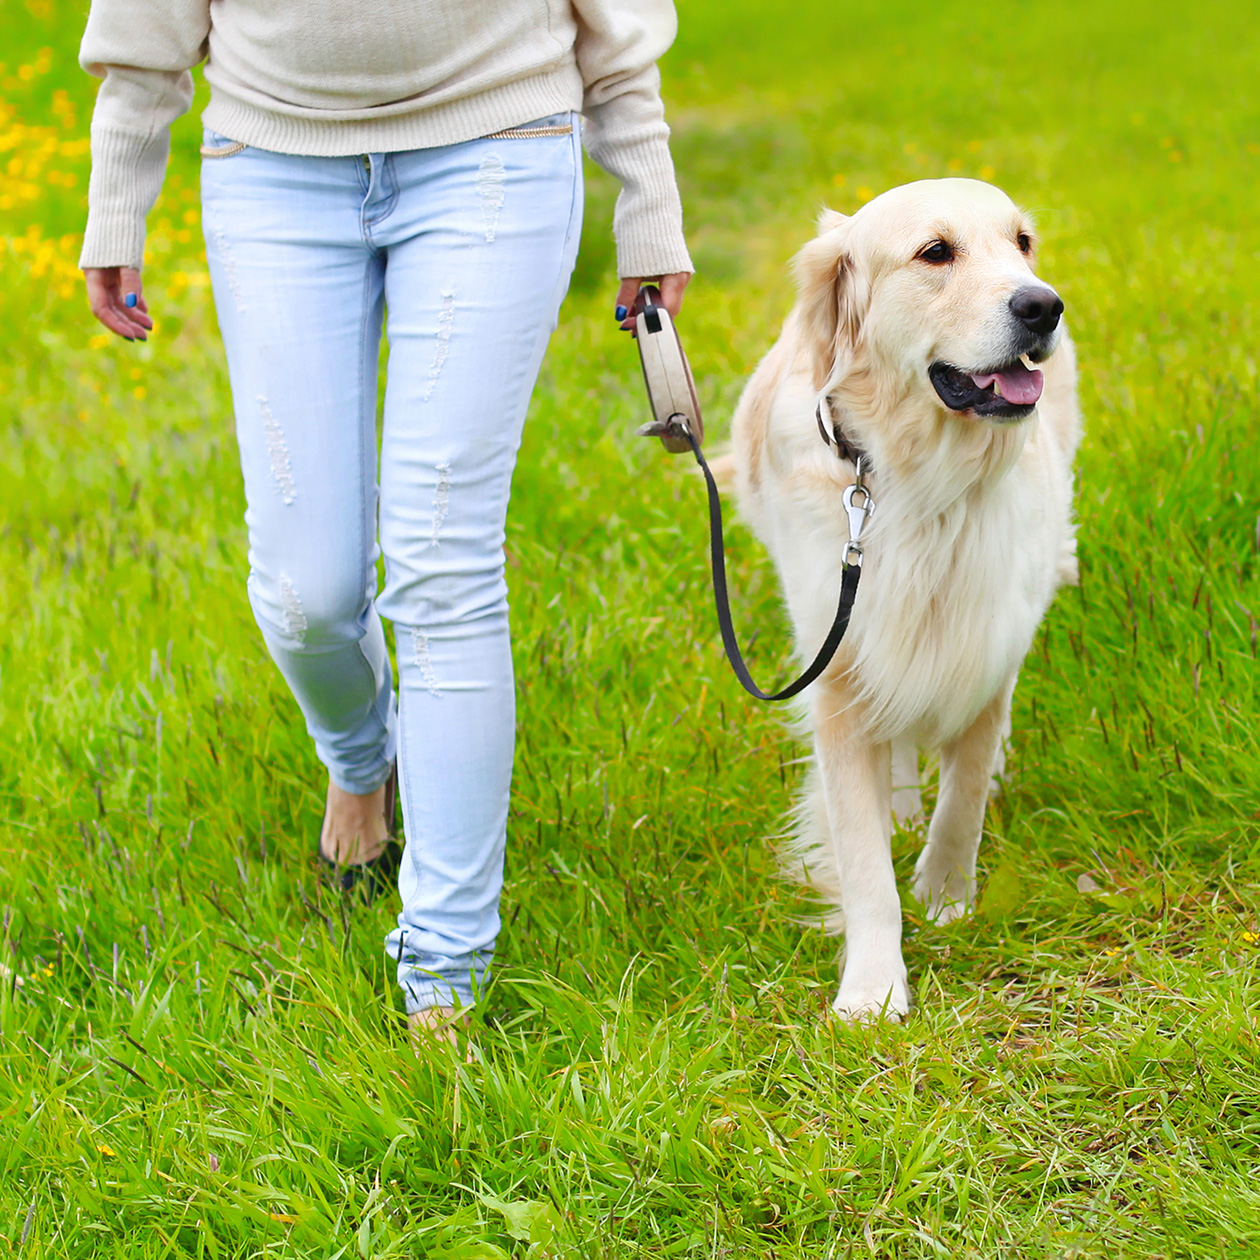 Если собака склонна тянуть поводок, лучше не использовать рулетку. Фотография: Rohappy / Shutterstock / FOTODOM